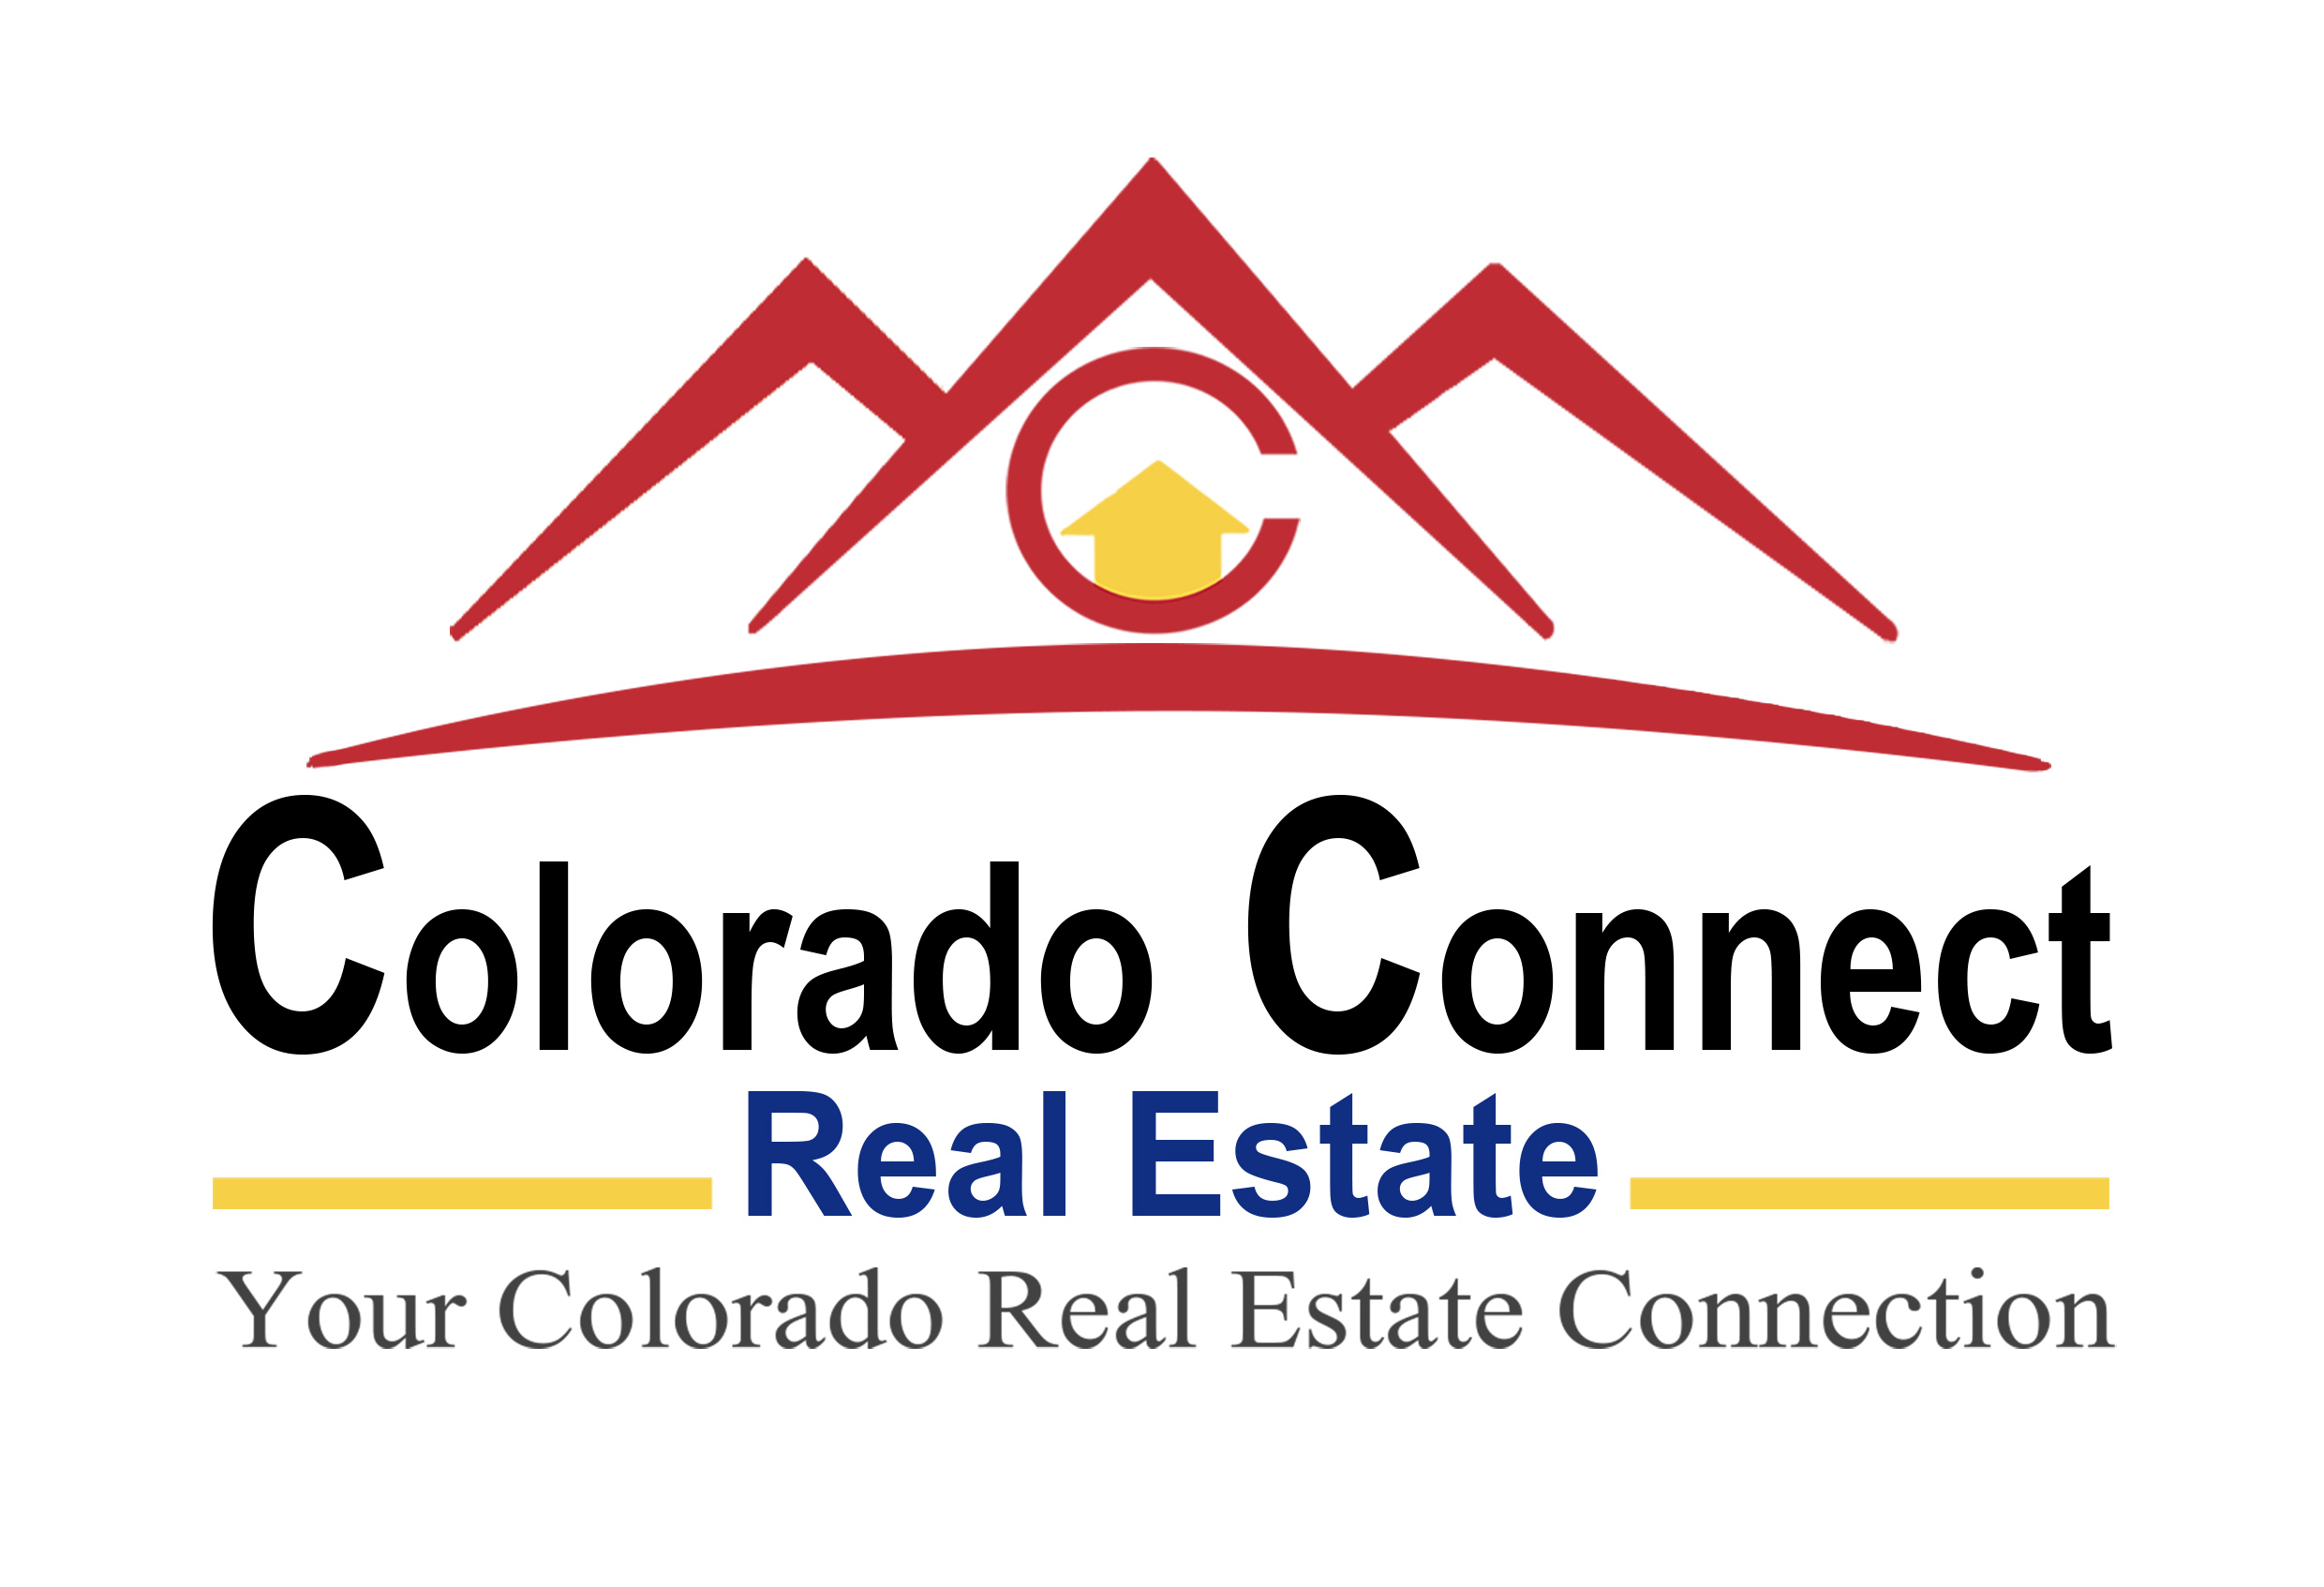 Colorado Connect Real Estate